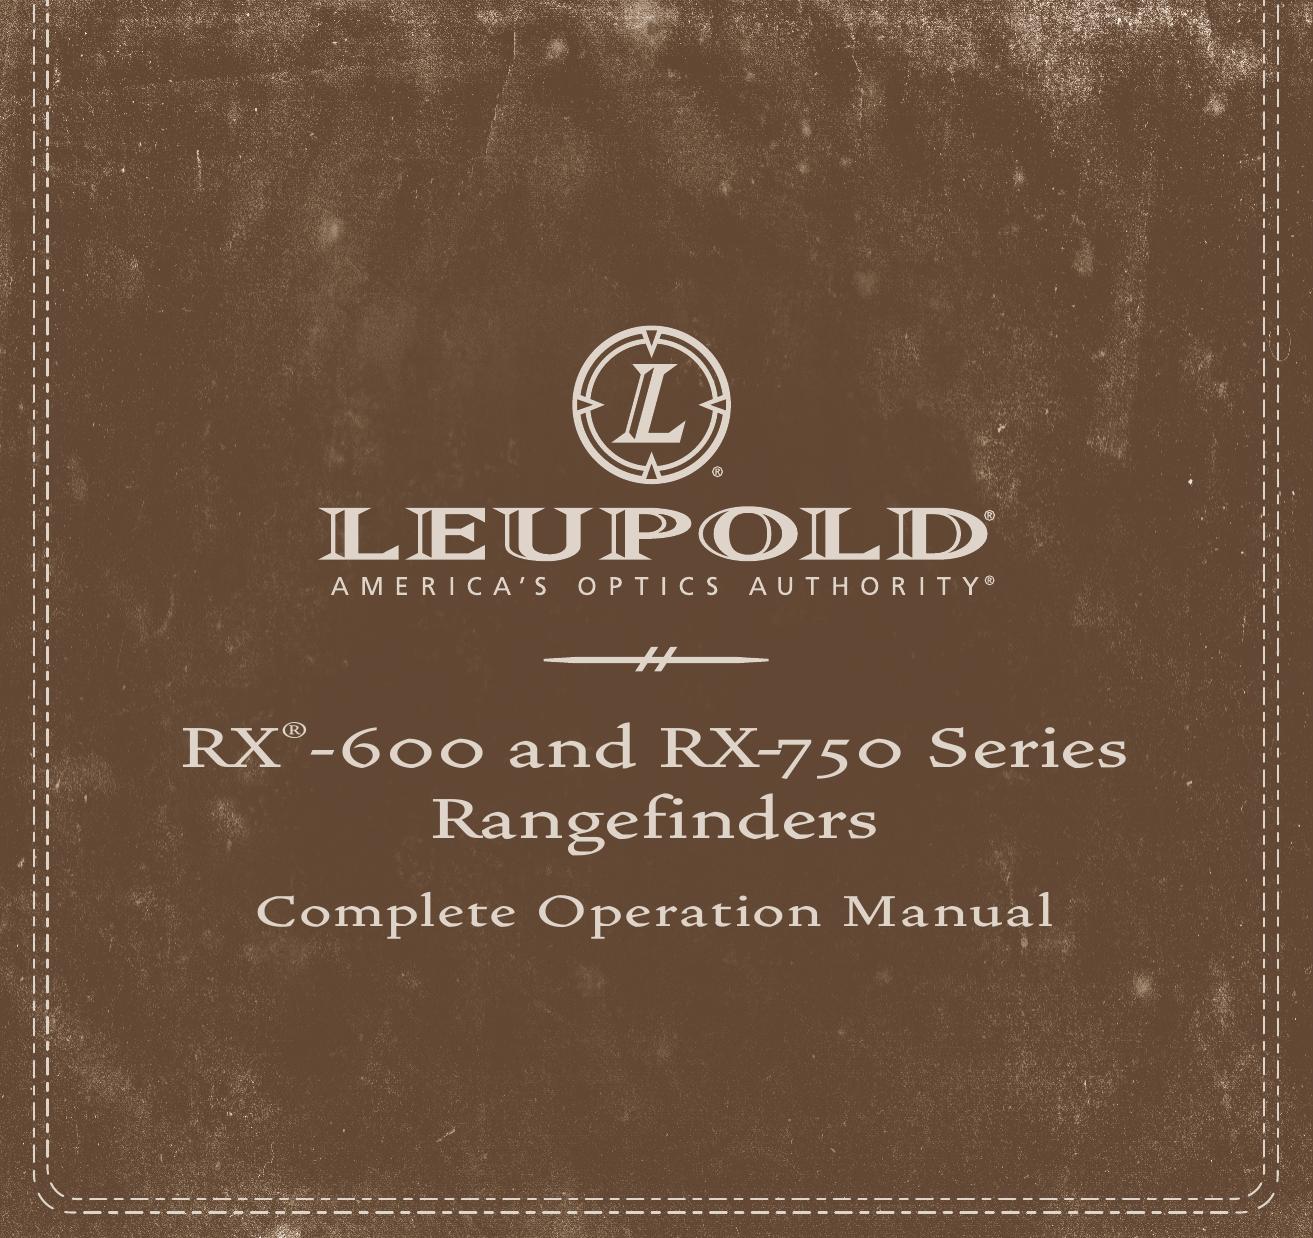 Leupold RX-750 Series Film Camera User Manual